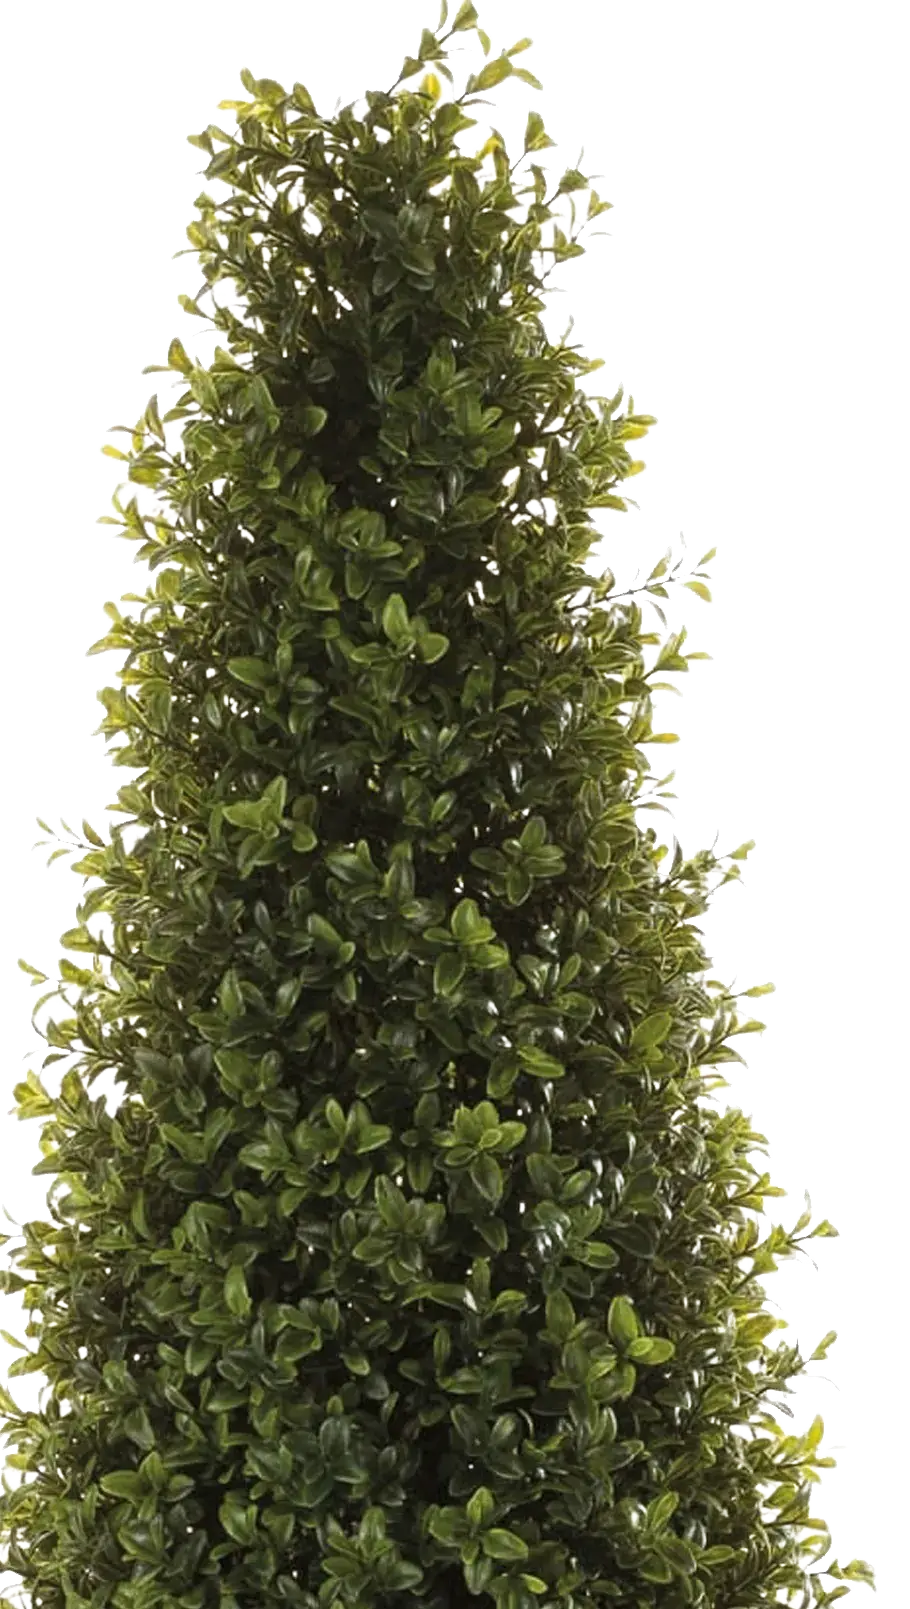 Künstliche Buchsbaumpyramide - Lucy | 165 cm auf transparentem Hintergrund, als Ausschnitt fotografiert, damit die Details der Kunstpflanze bzw. des Kunstbaums noch deutlicher zu erkennen sind.